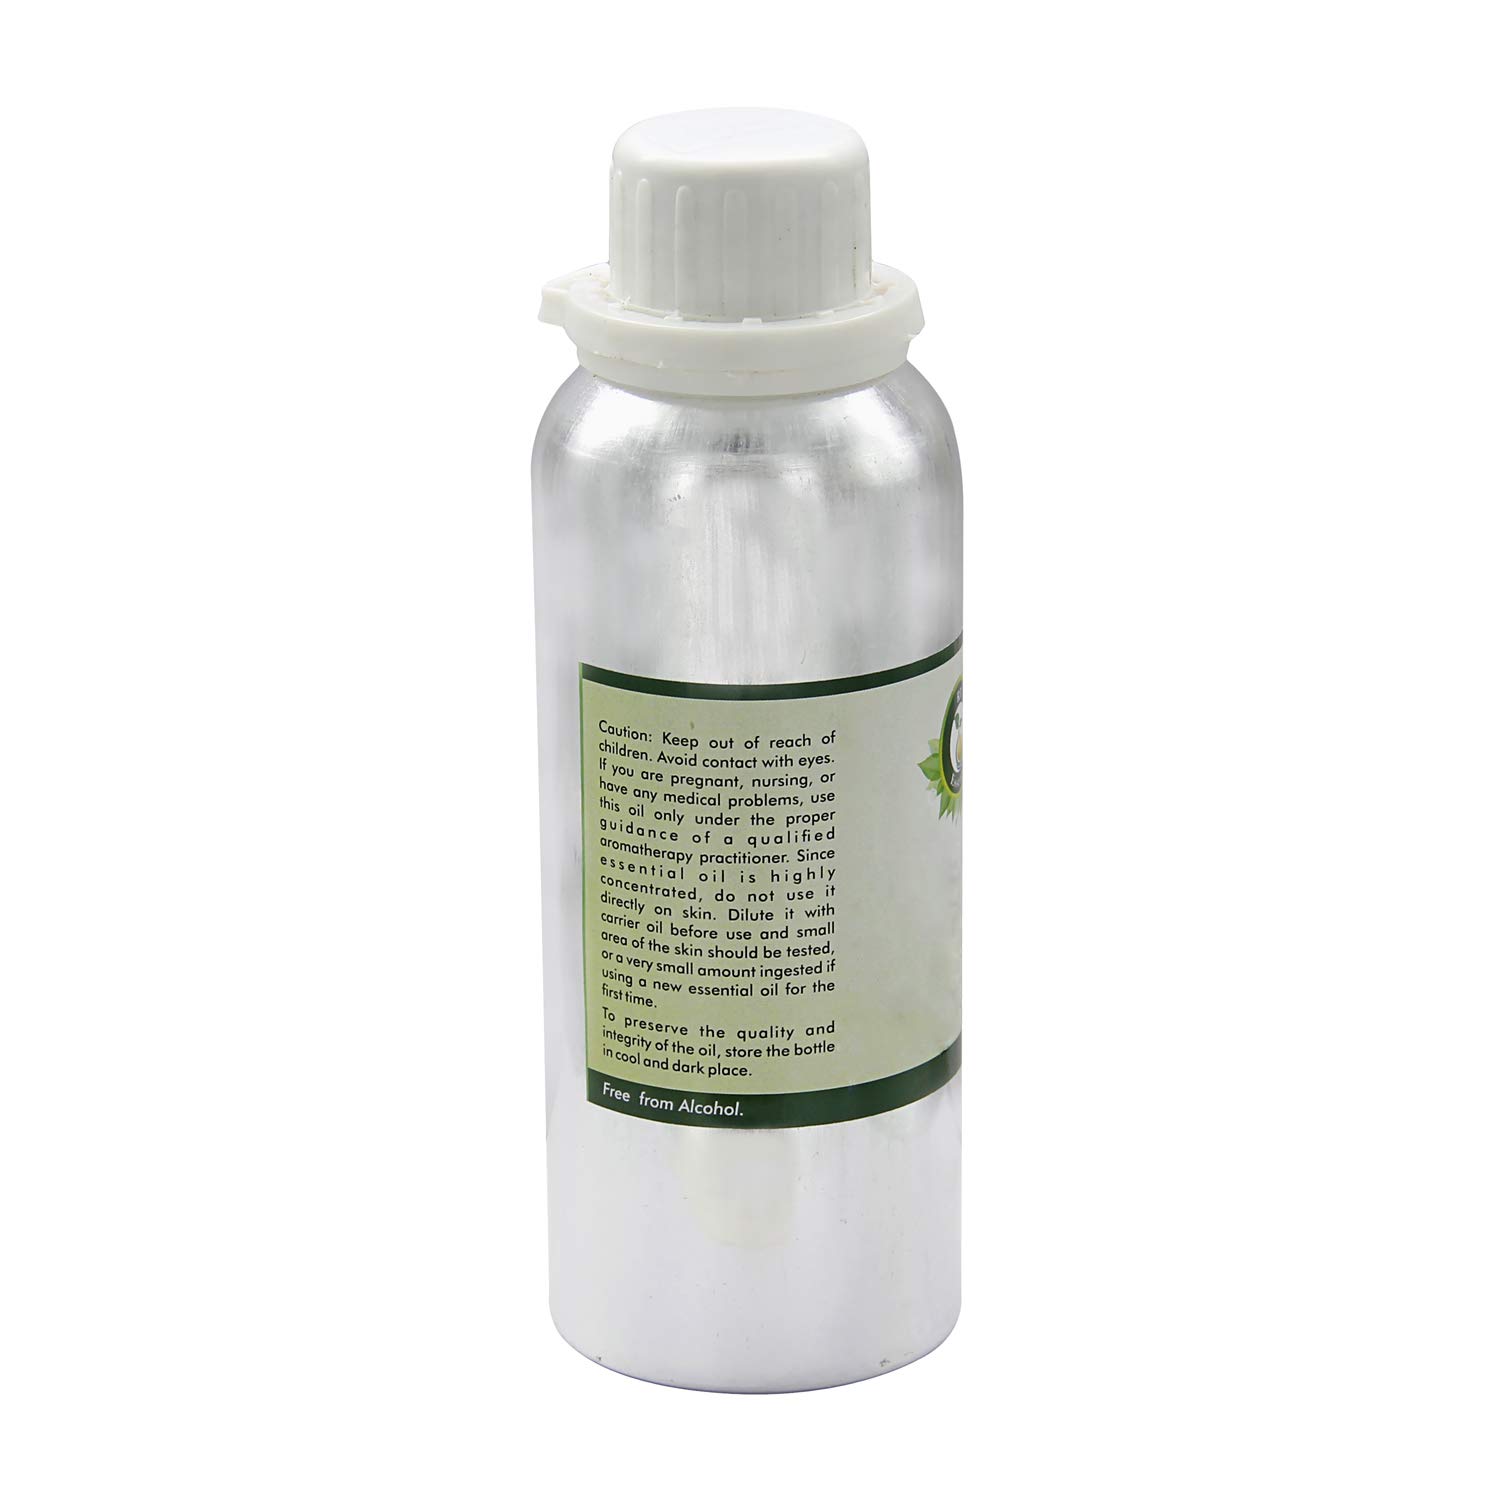 R V Essential Pure Tea Tree Essential Oil 1250ml (42oz)- Melaleuca Alternifolia (100% Pure and Natural Therapeutic Grade)